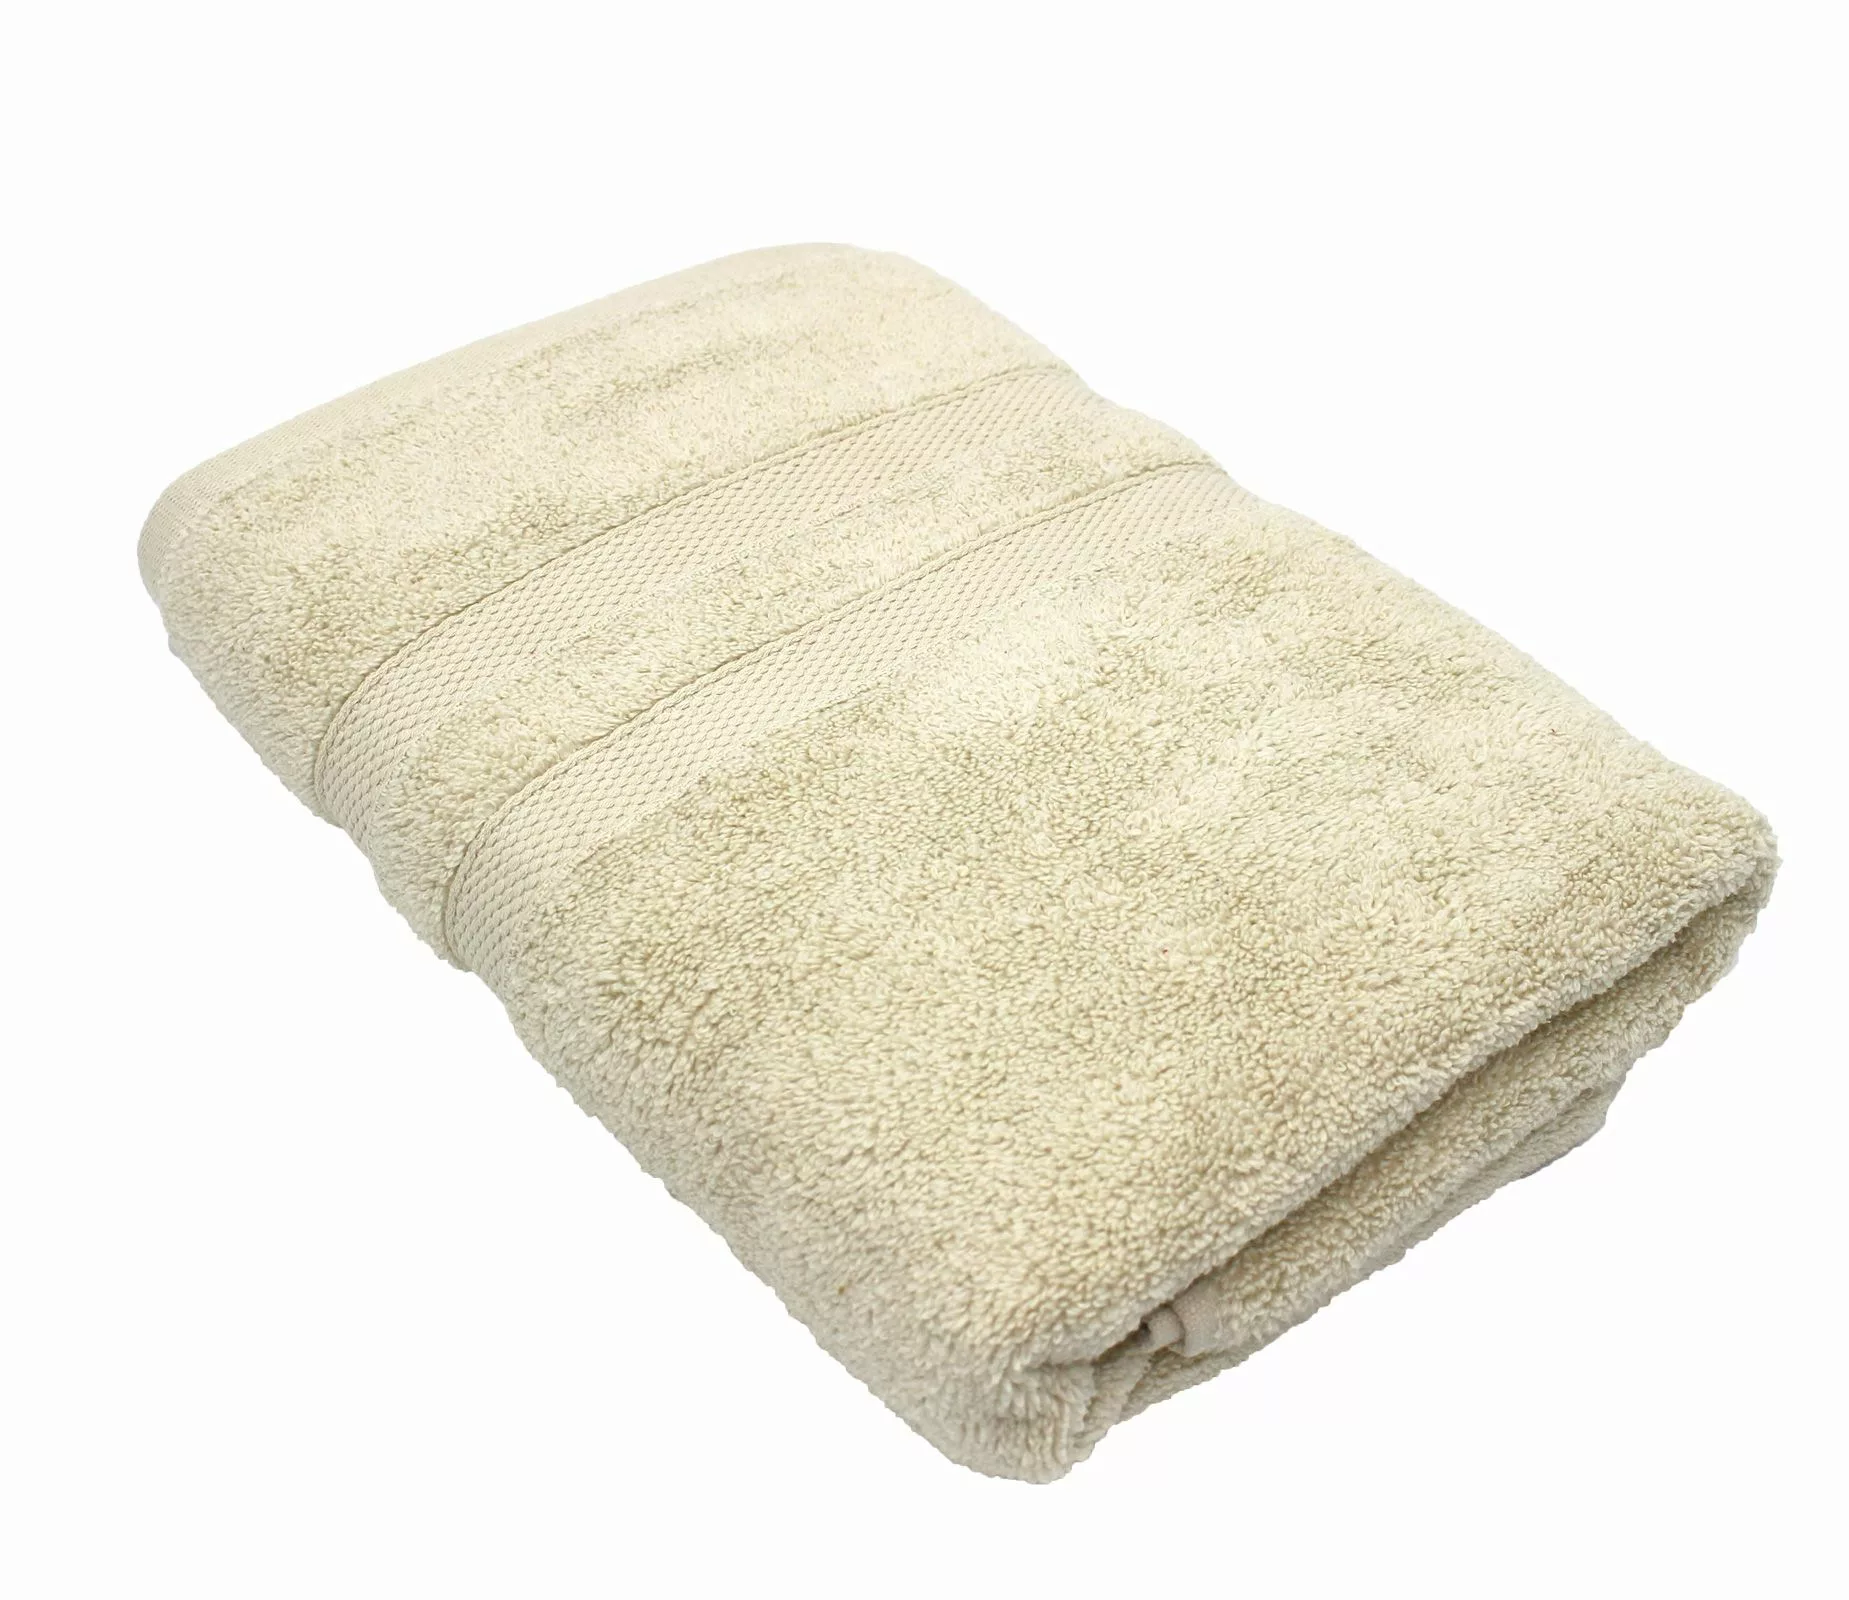 Handtuch Serie P.K. Soft Cotton 100% Baumwolle-natur-4 er Pack Handtuch 50x günstig online kaufen